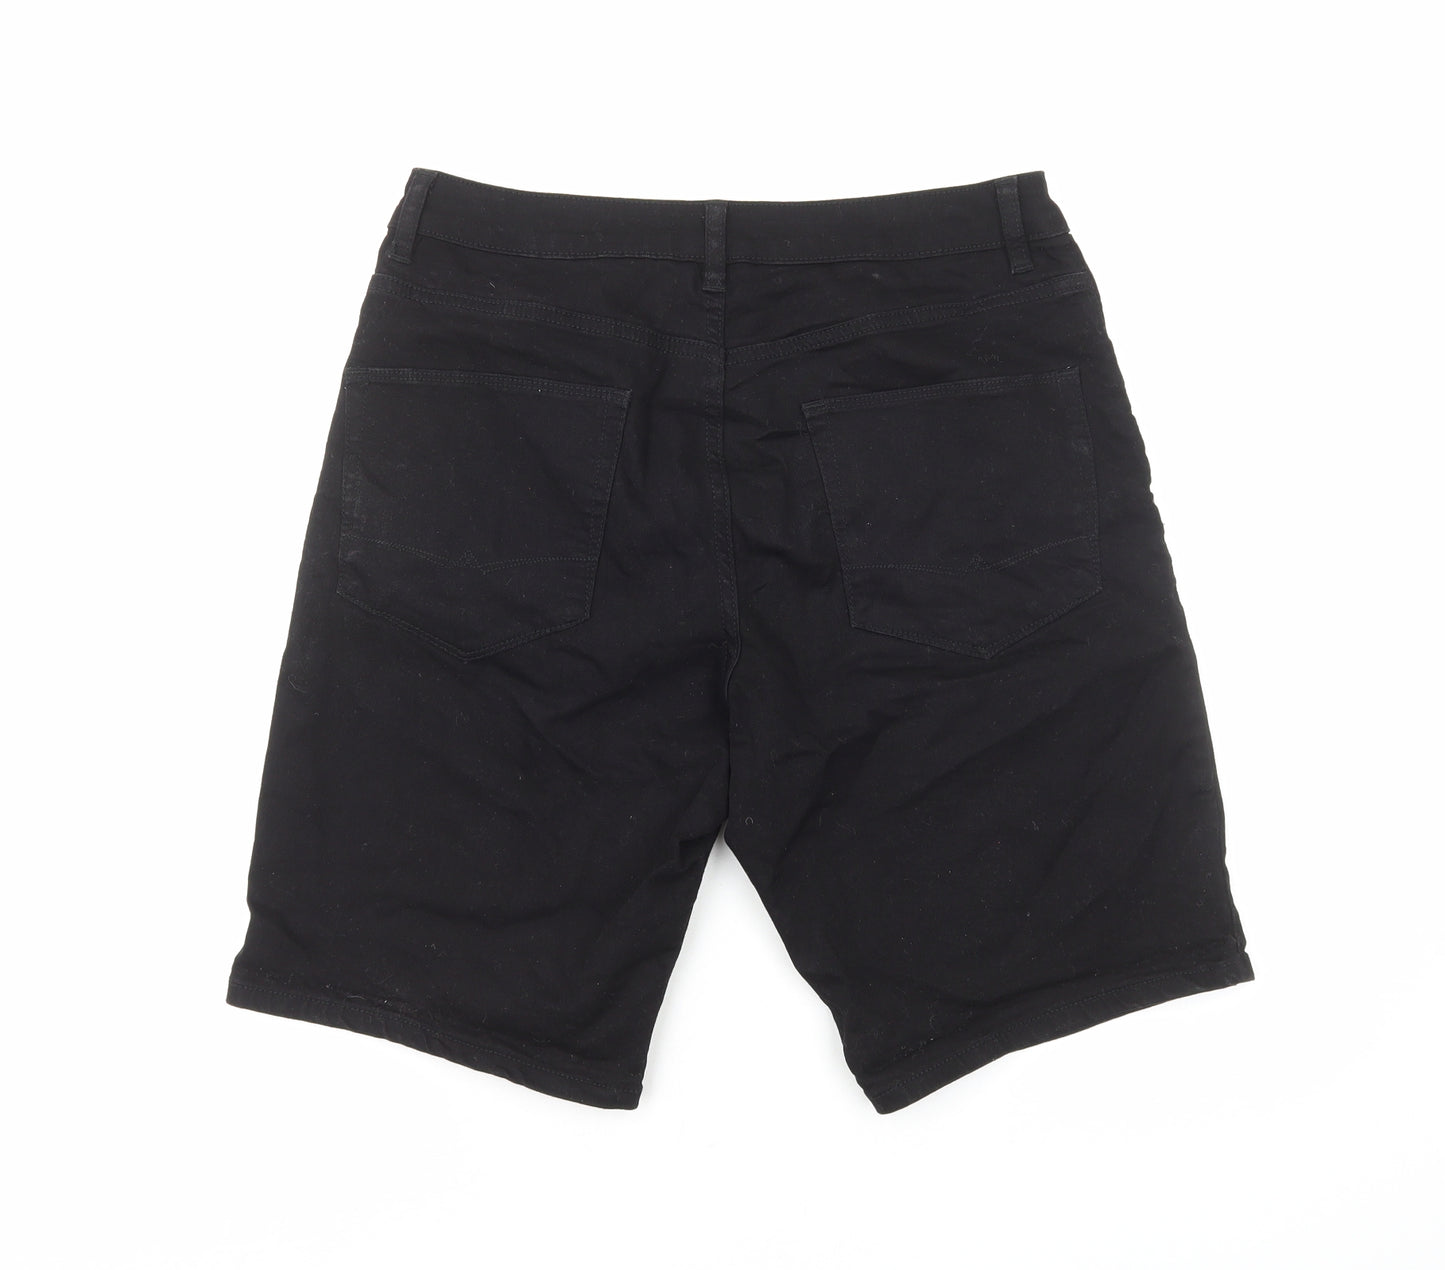 ASOS Mens Black Cotton Bermuda Shorts Size S Regular Zip